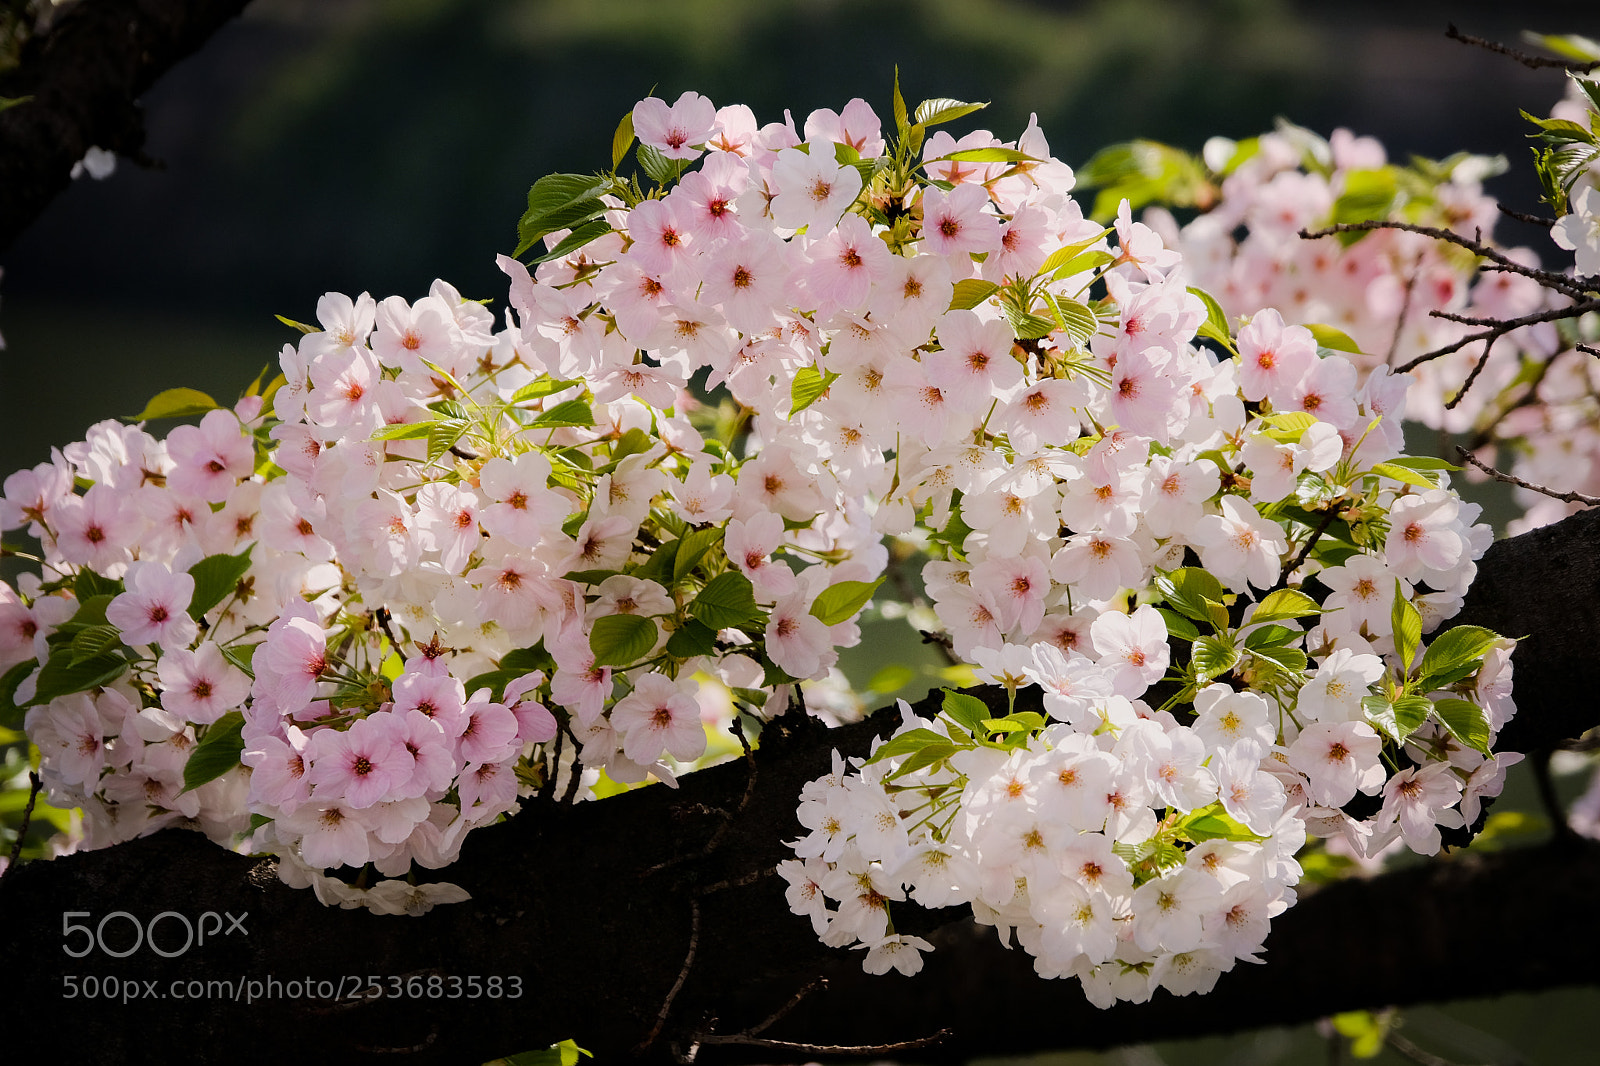 Fujifilm X-Pro2 sample photo. Hazakura cheery blossoms with photography